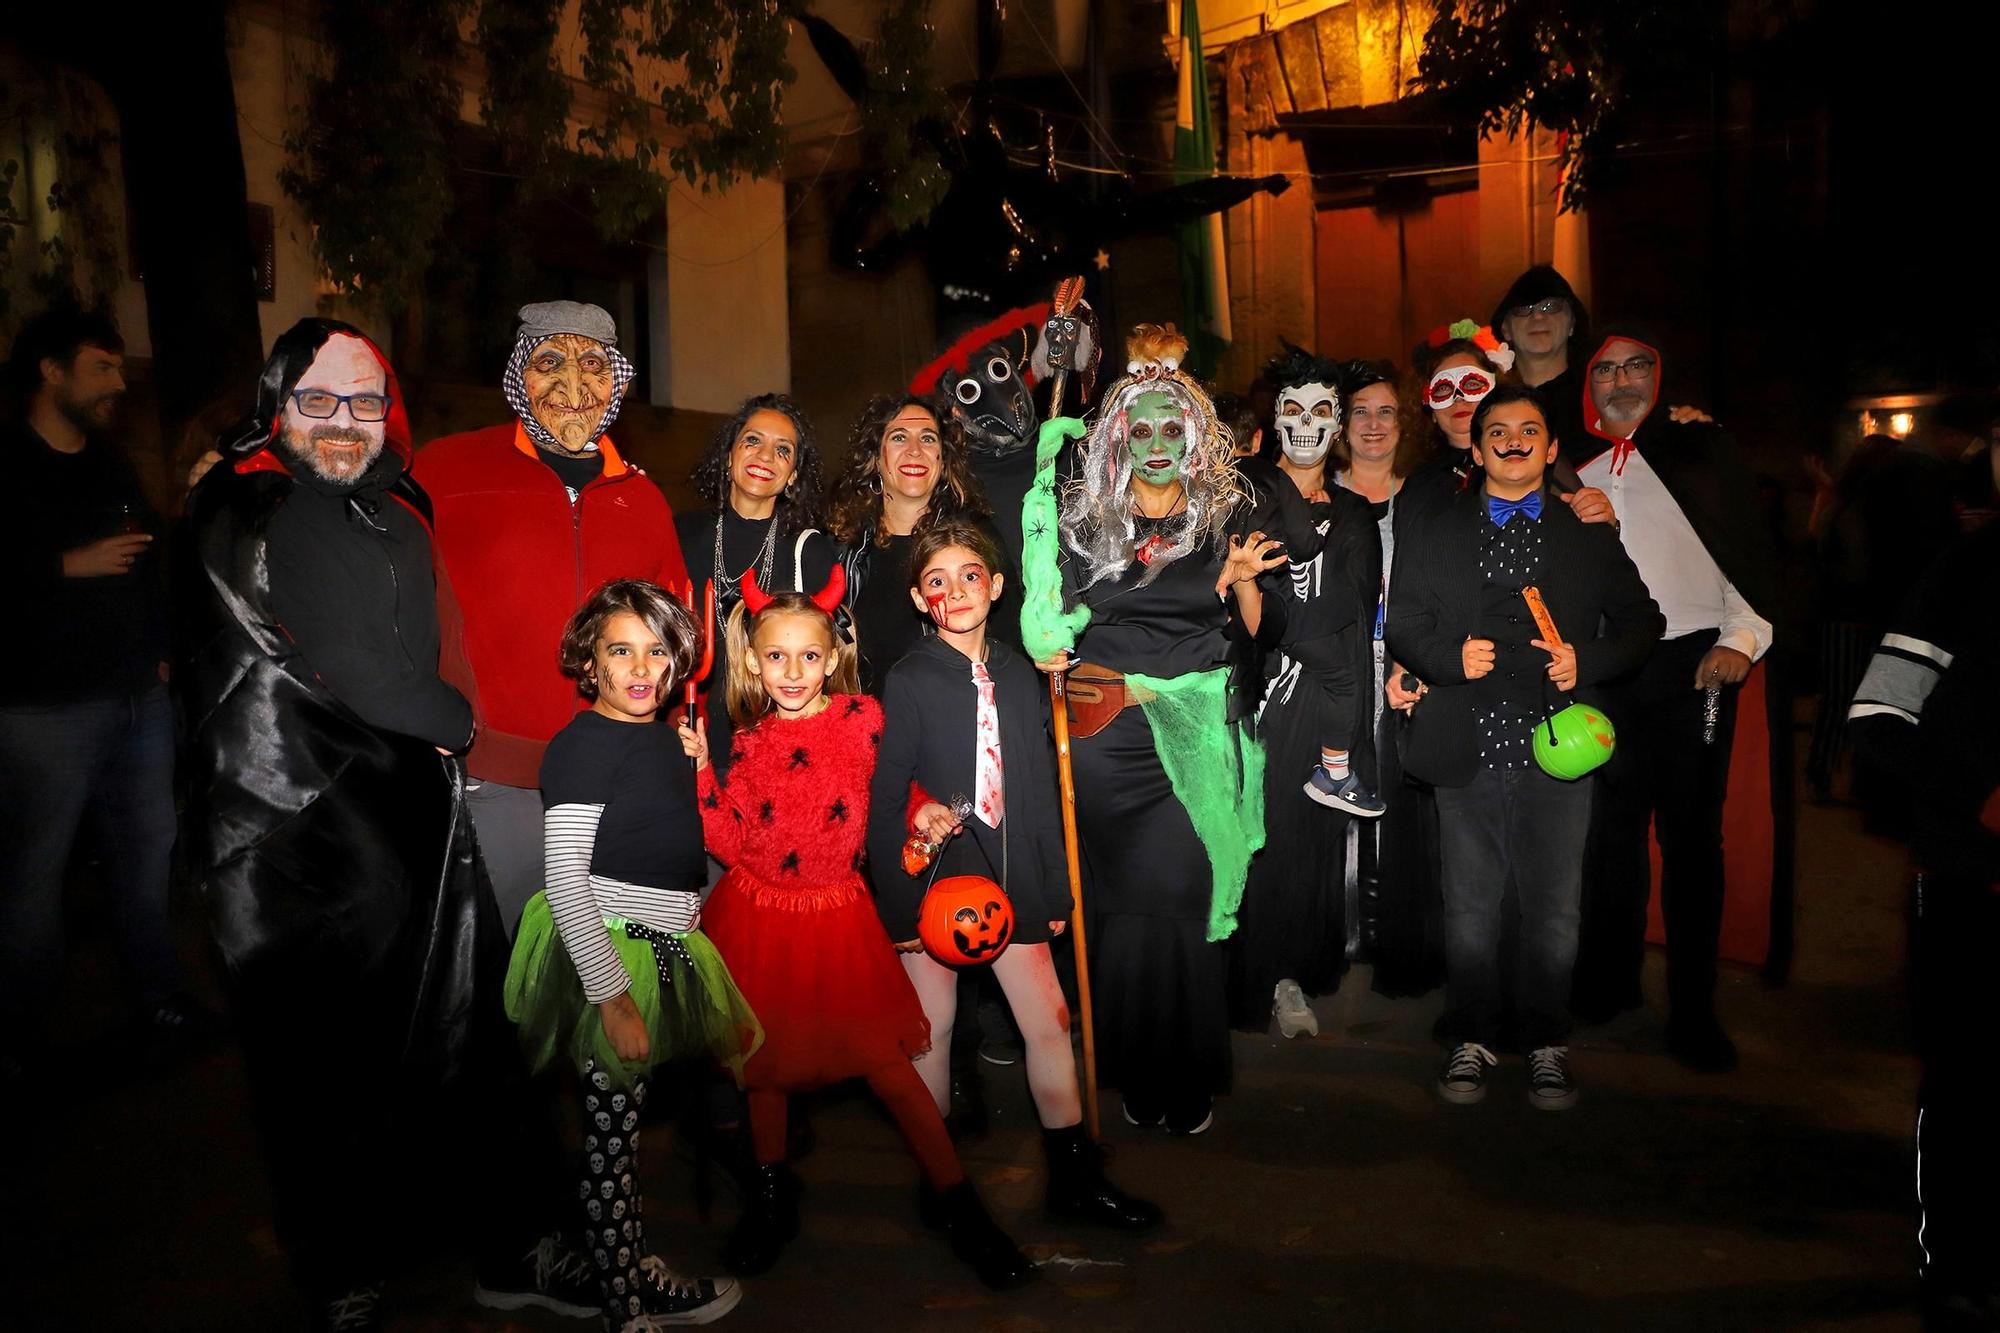 La noche de Halloween en Córdoba, en imágenes